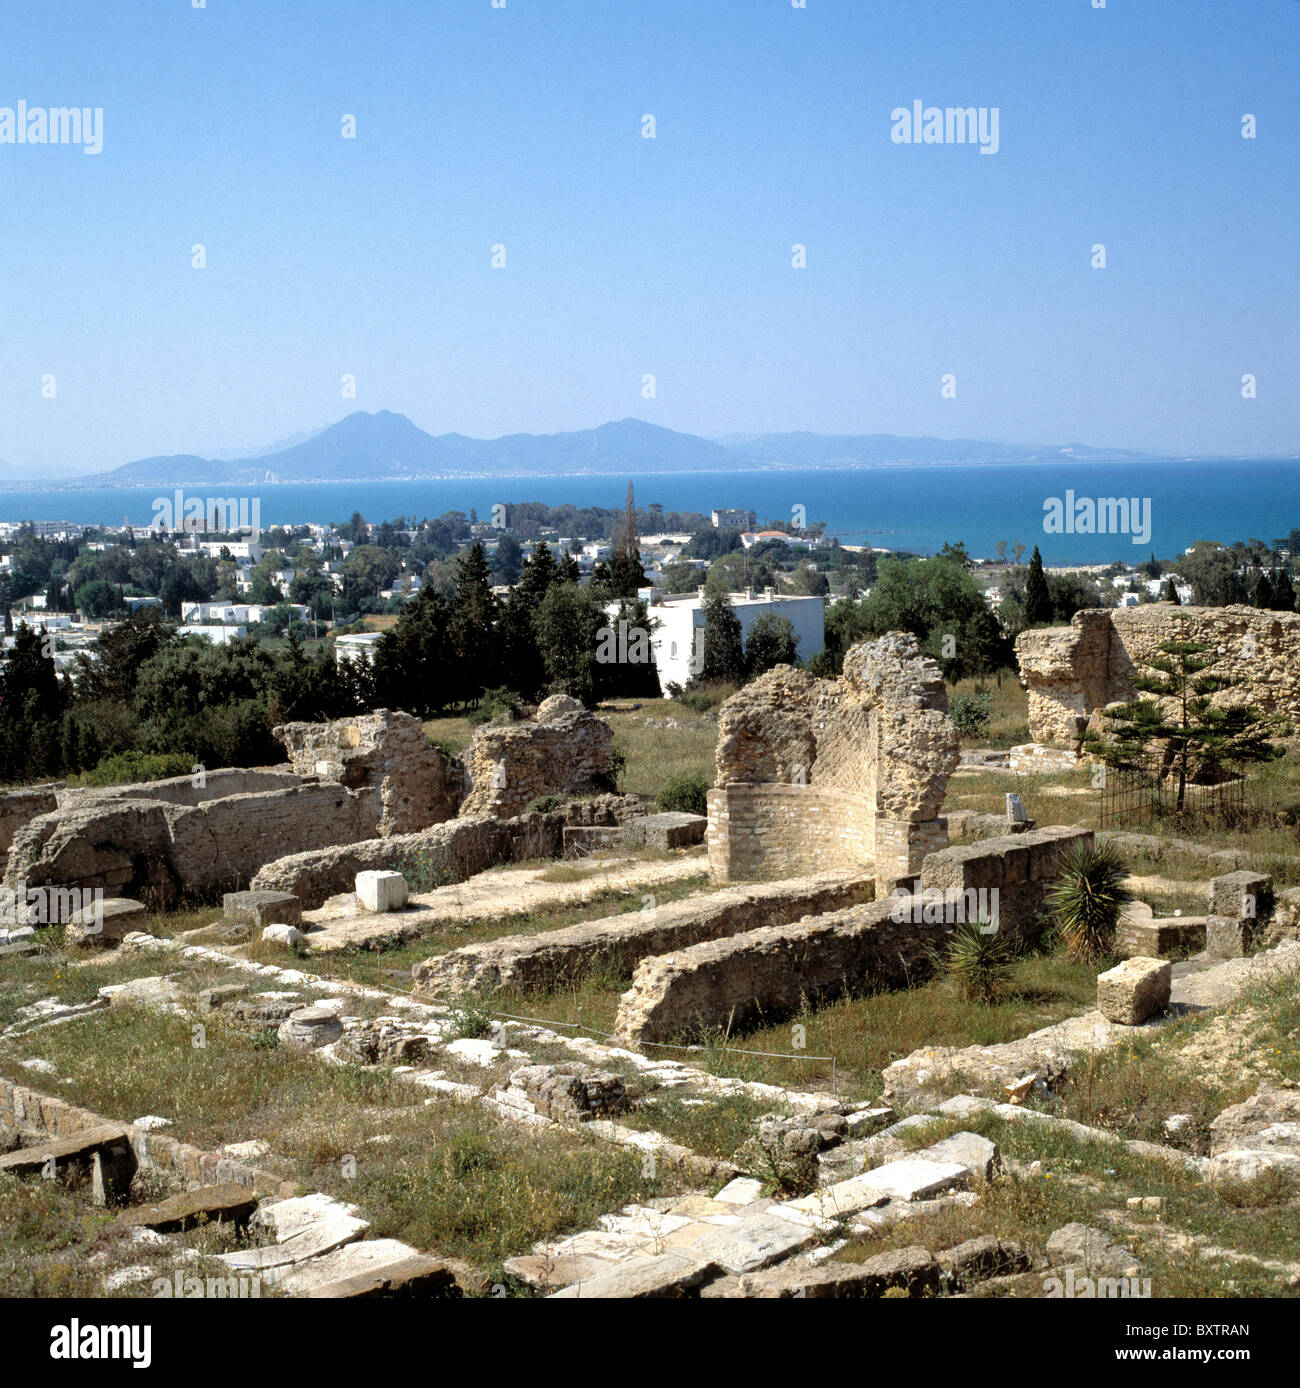 Panoramica delle rovine di Cartagine, Tunisia, con macchia mediterranea in background Foto Stock